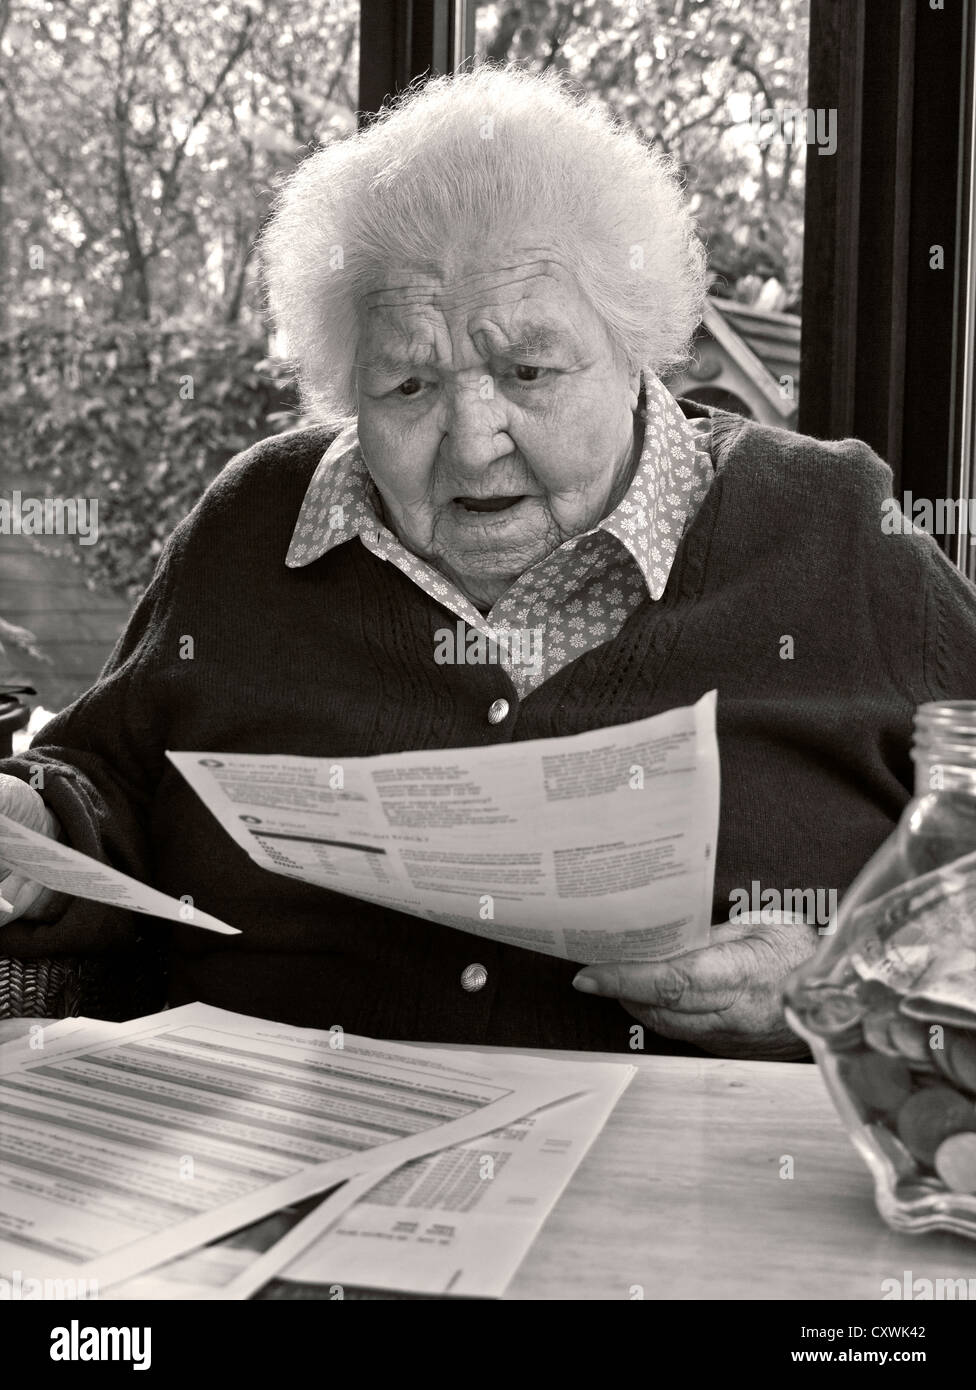 SPESE DI ENERGIA SHOCK SORPRESA preoccupato anziano anziano signora a casa lettura sua ultima energia / bollette casa investimenti lettere (B&W toned conversione) Foto Stock